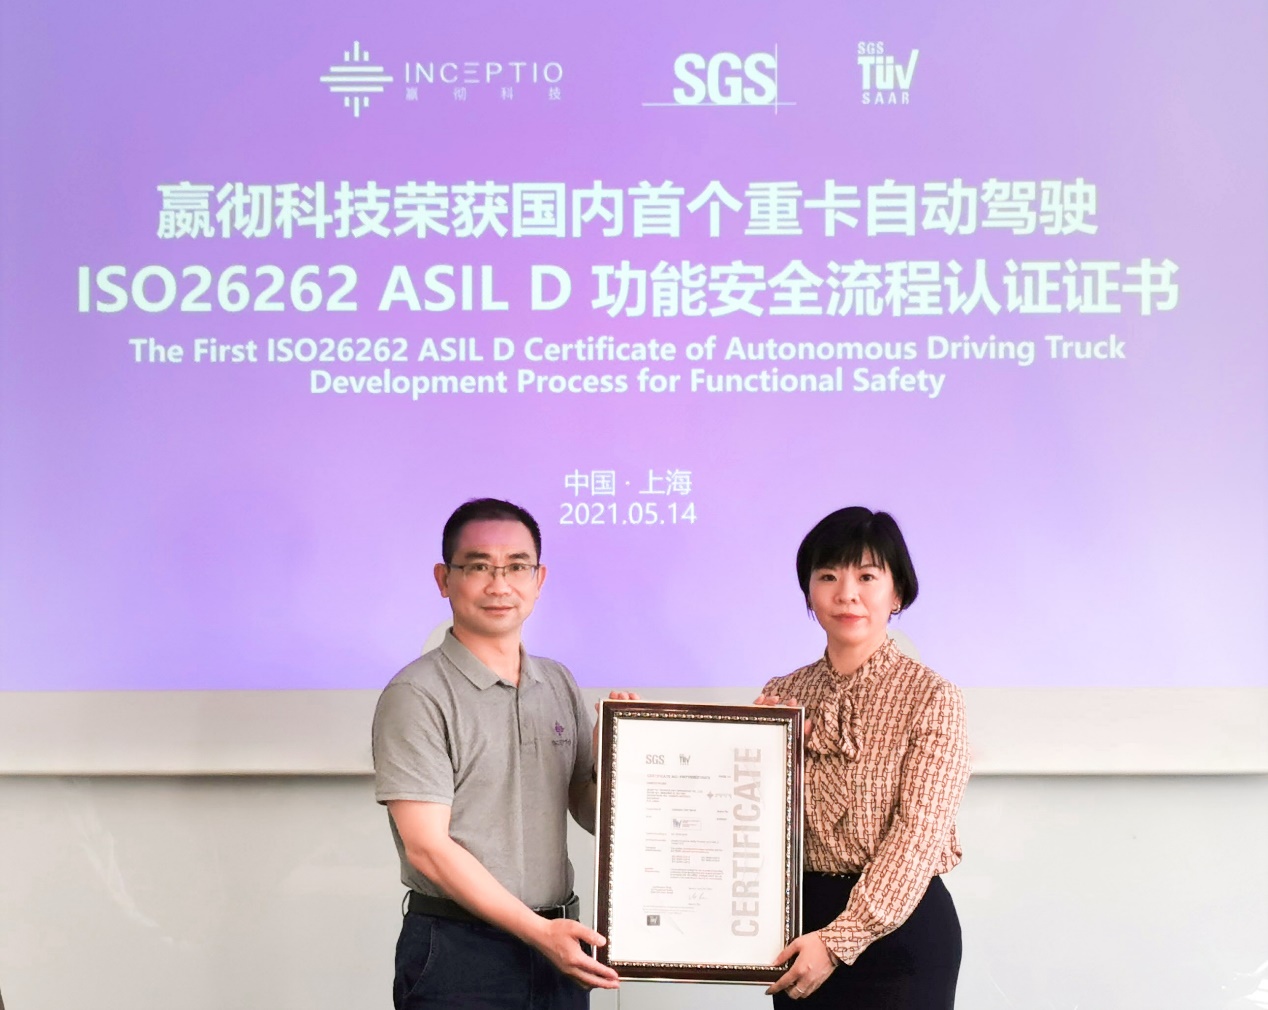 嬴彻科技获得国内首个重卡自动驾驶最高级别ASIL D功能安全流程认证